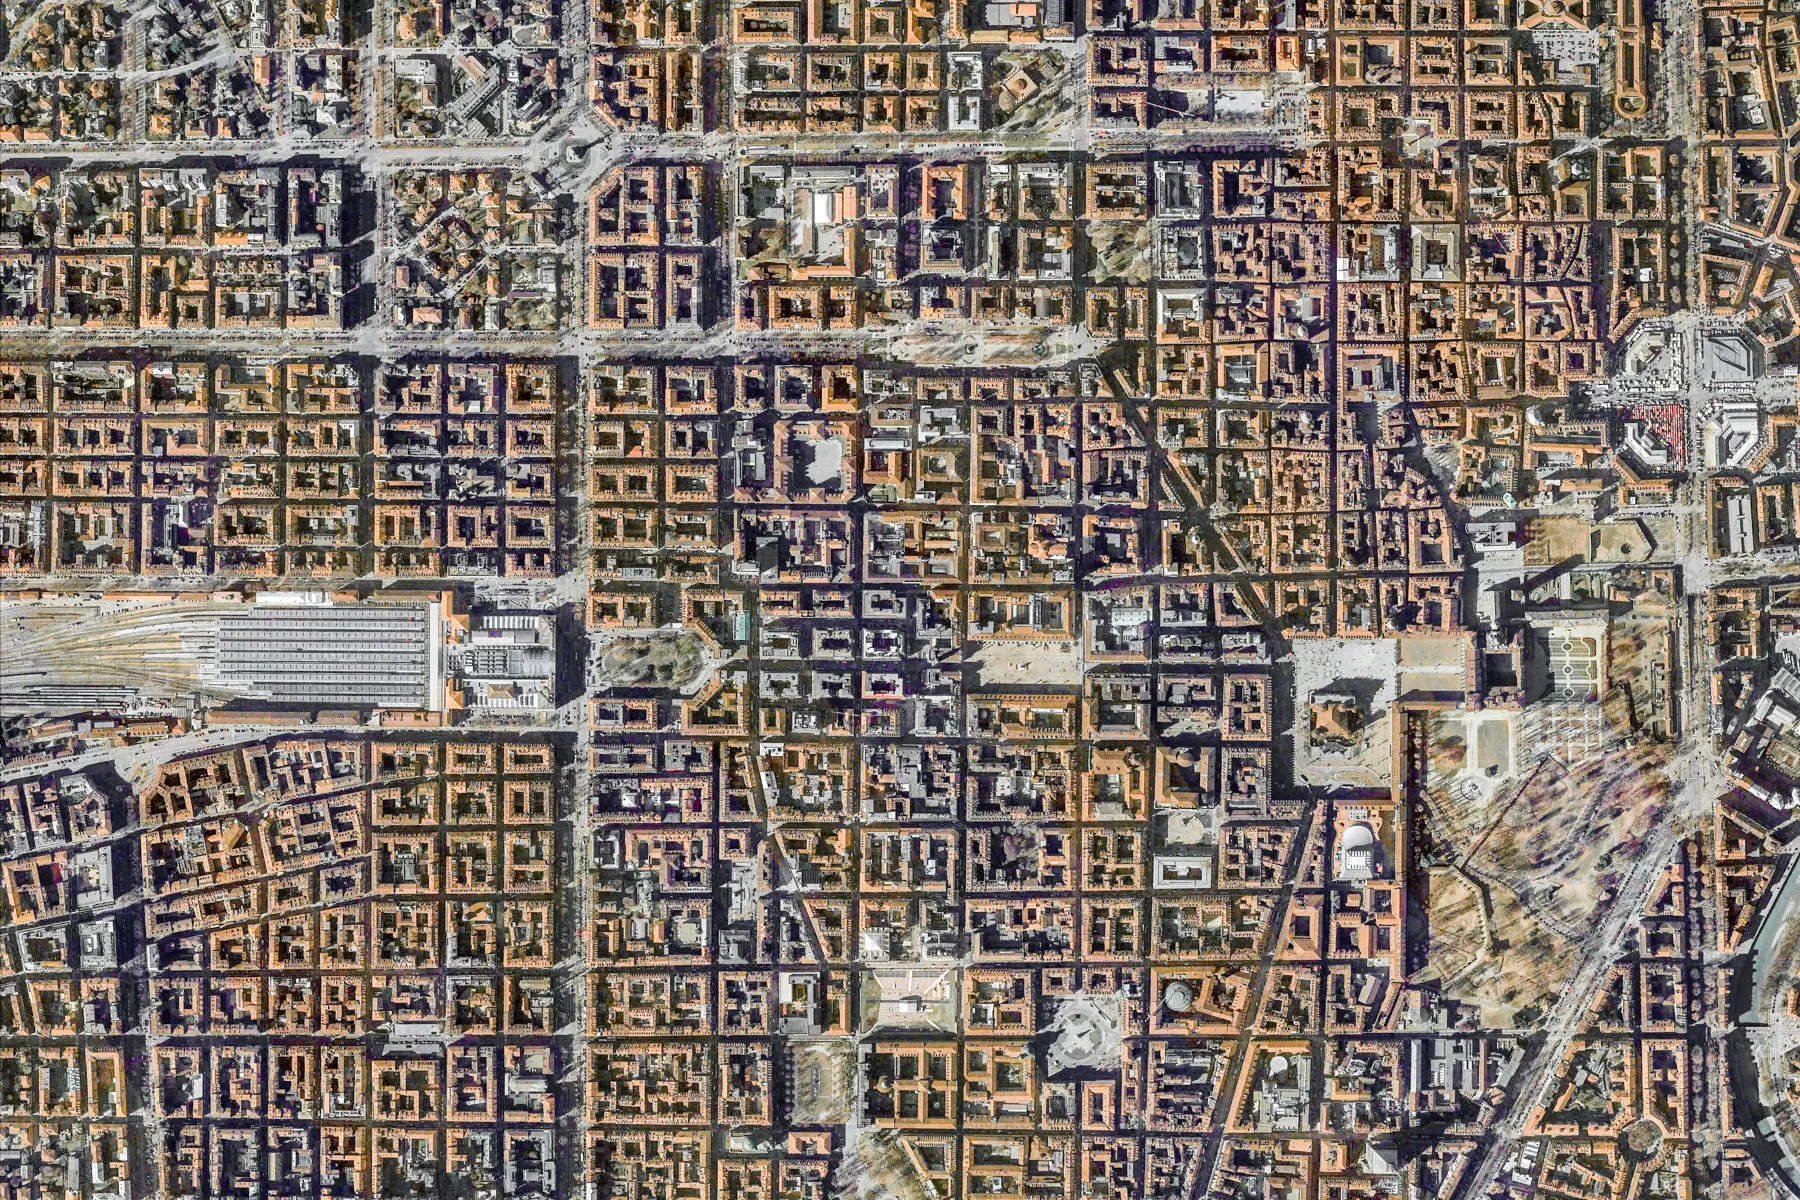 Territorio, Torino su Google Earth View viene riconosciuta tra le mille migliori immagini